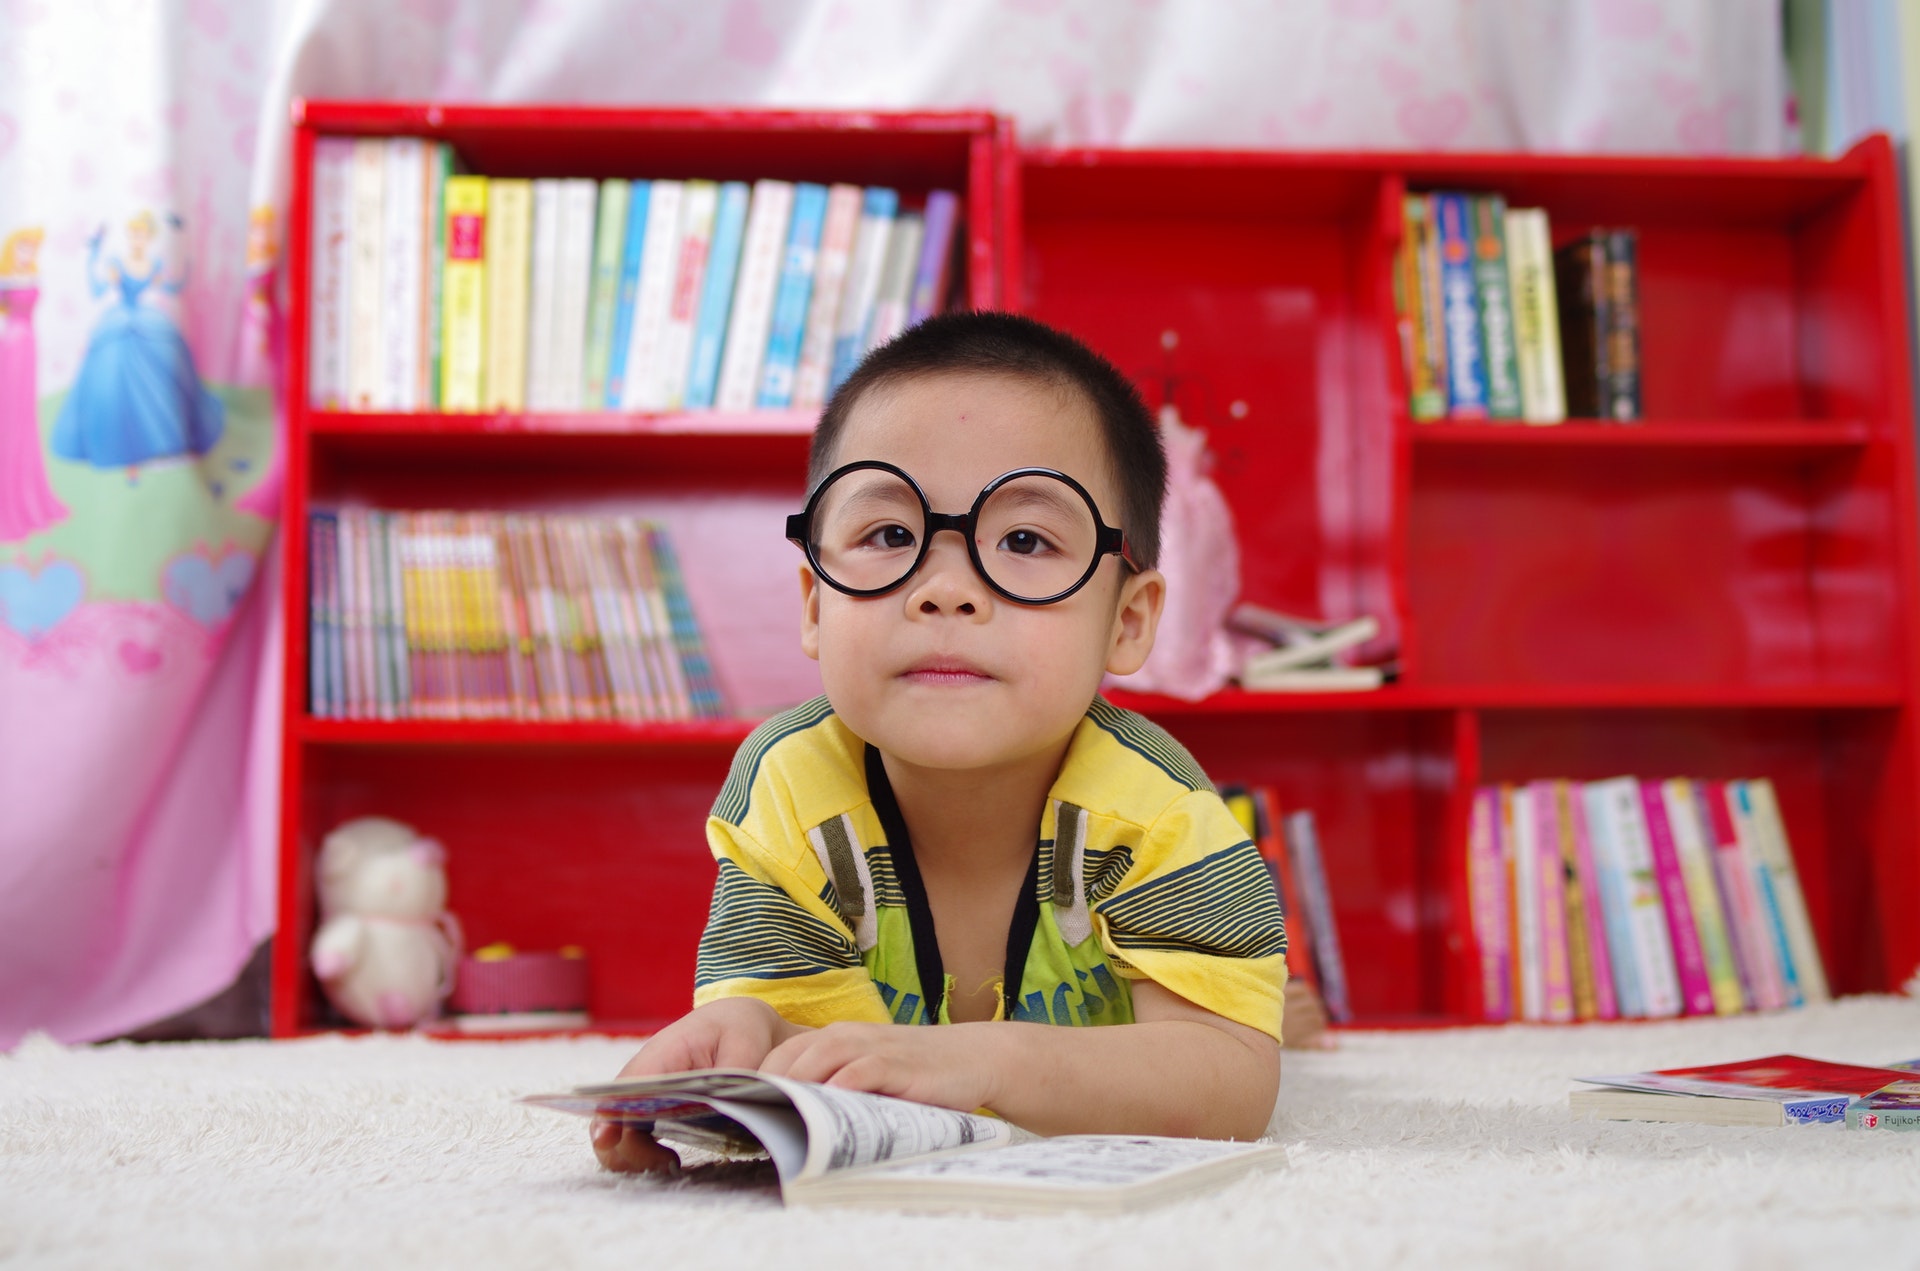 Criança usando um óculos deitada em um carpete em uma sala de aula com estantes vermelhas ao fundo. Imagem ilustrativa do texto franquia educacional infantil.